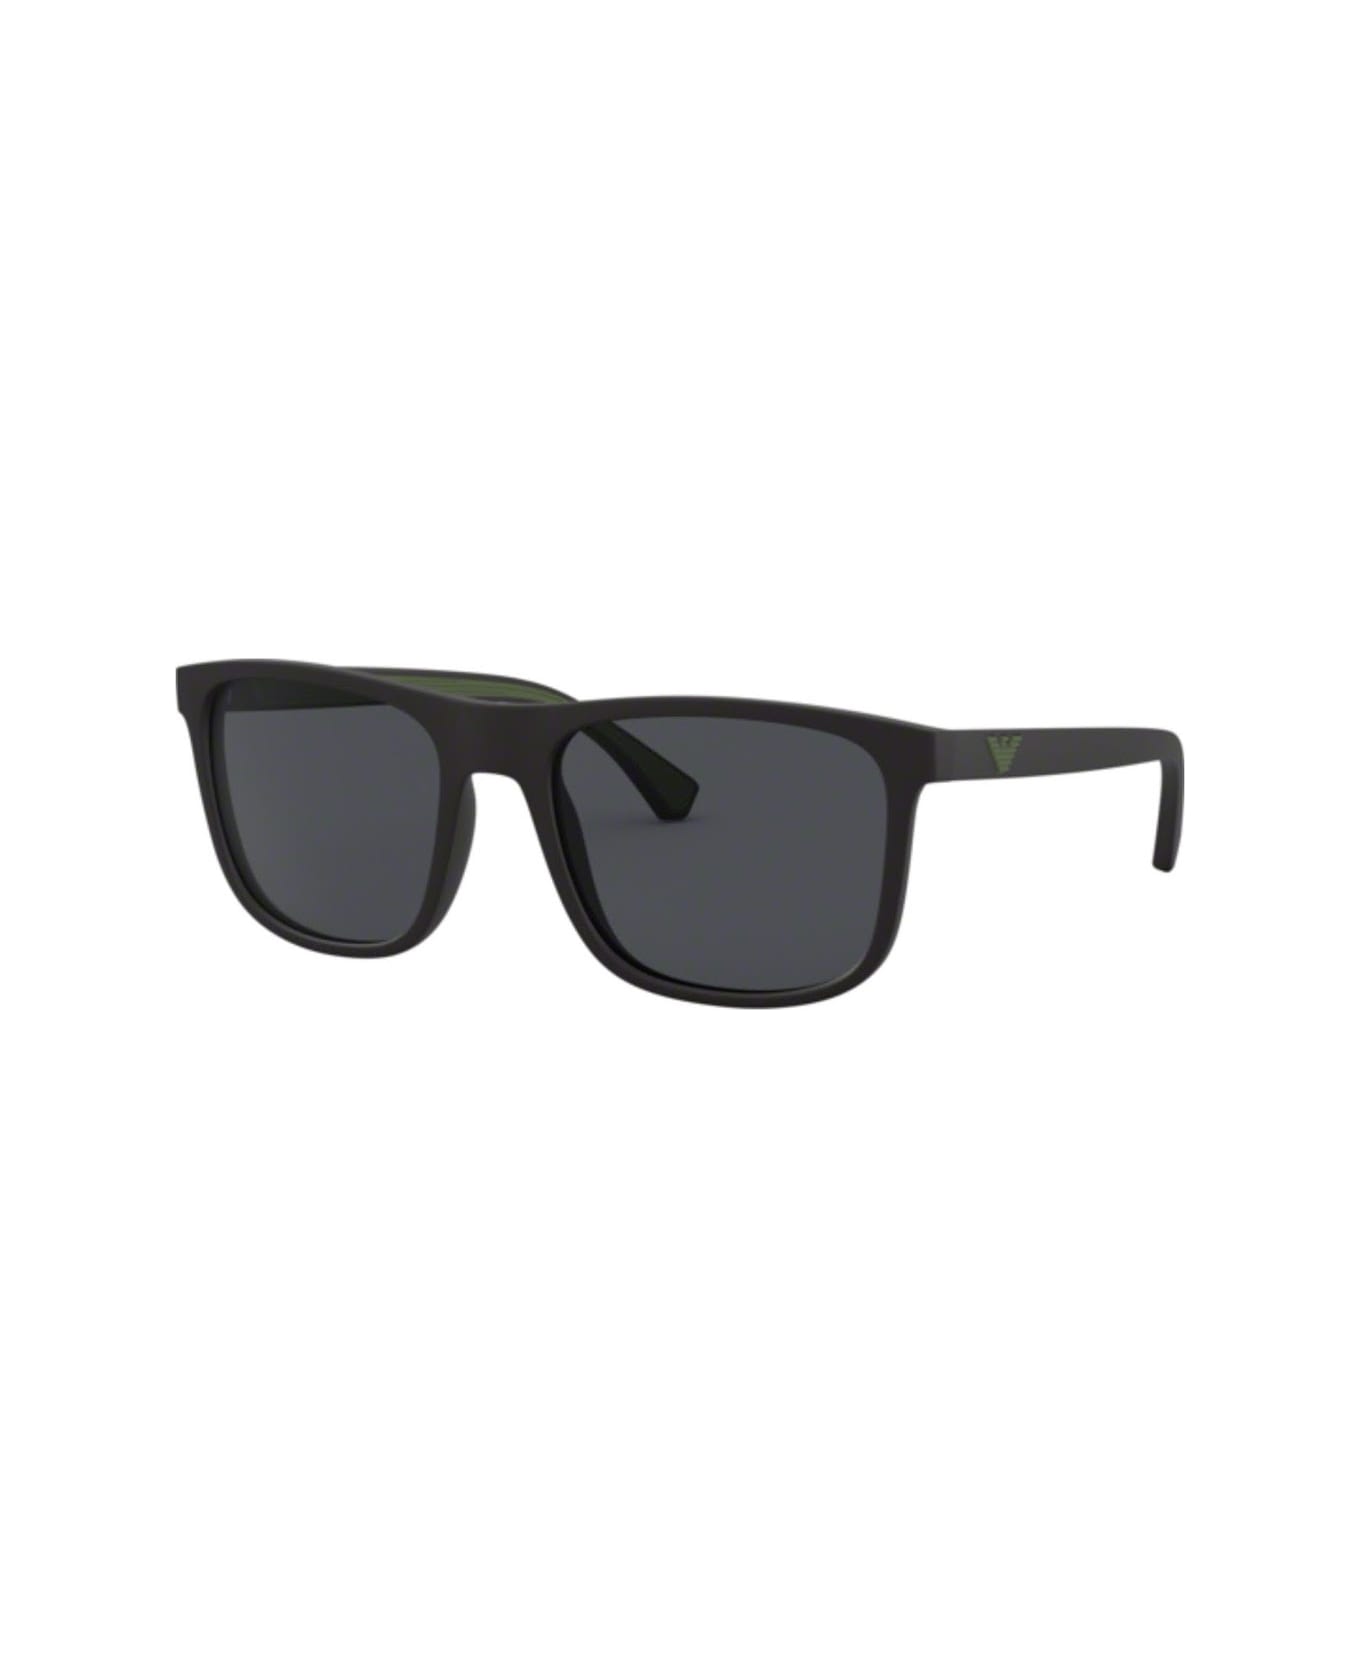 Emporio Armani EA4129 504287 Sunglasses サングラス